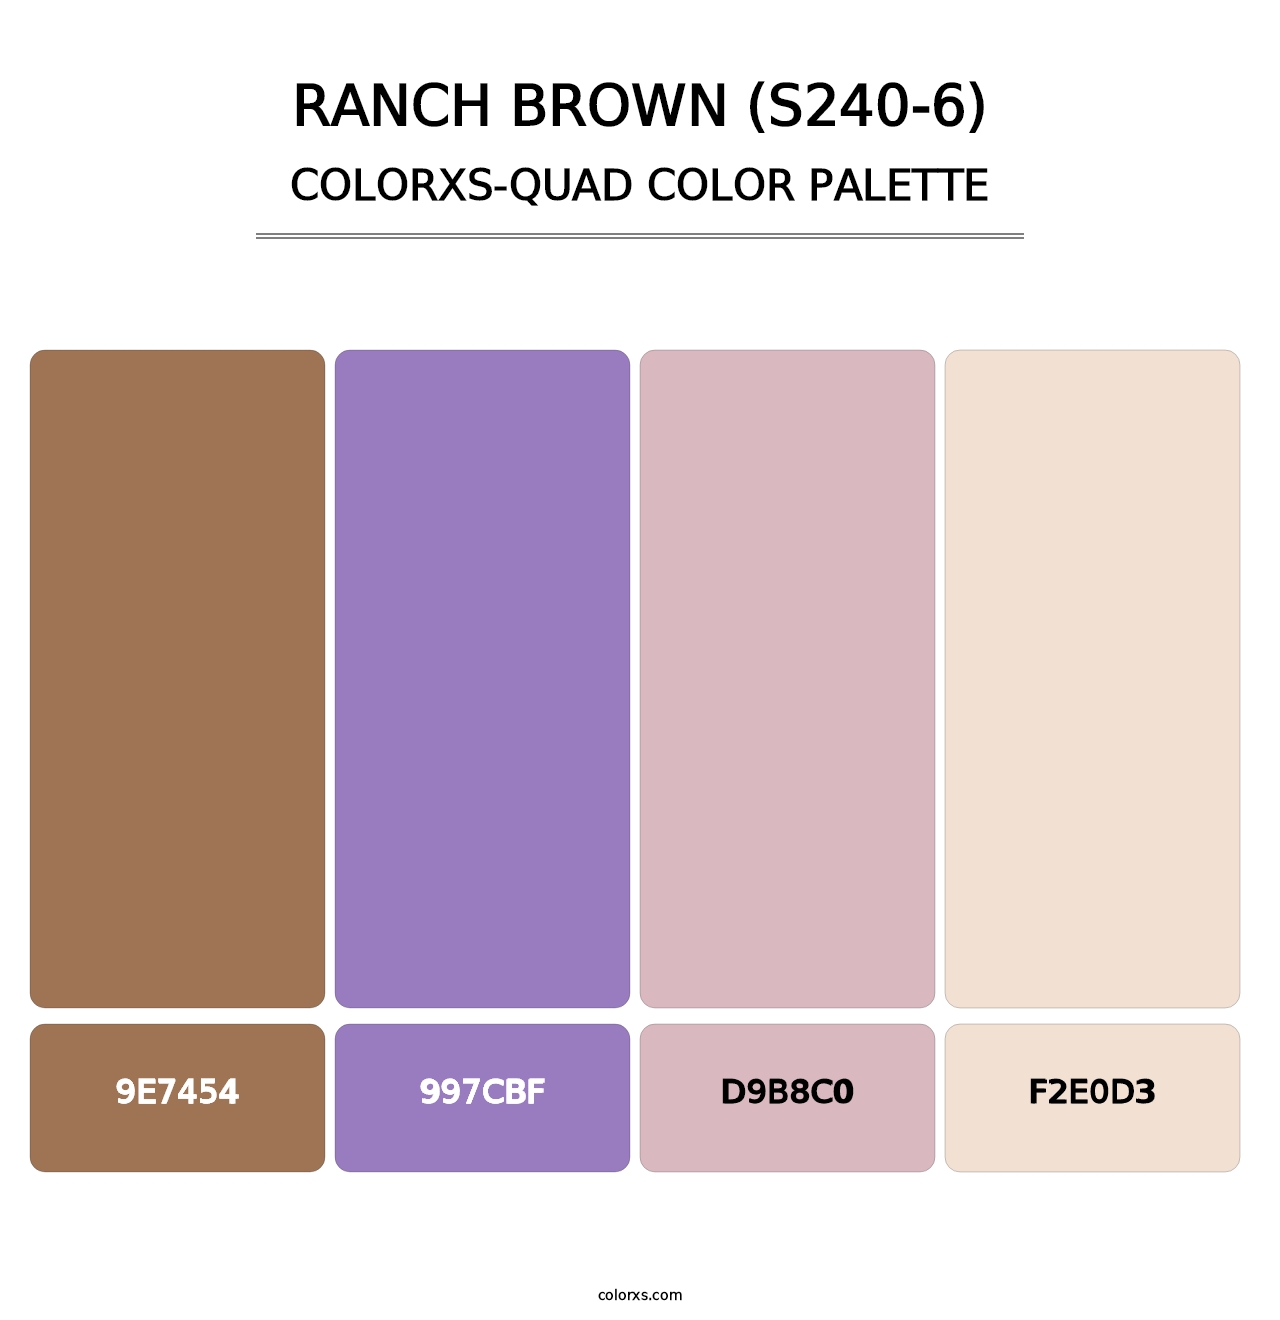 Ranch Brown (S240-6) - Colorxs Quad Palette